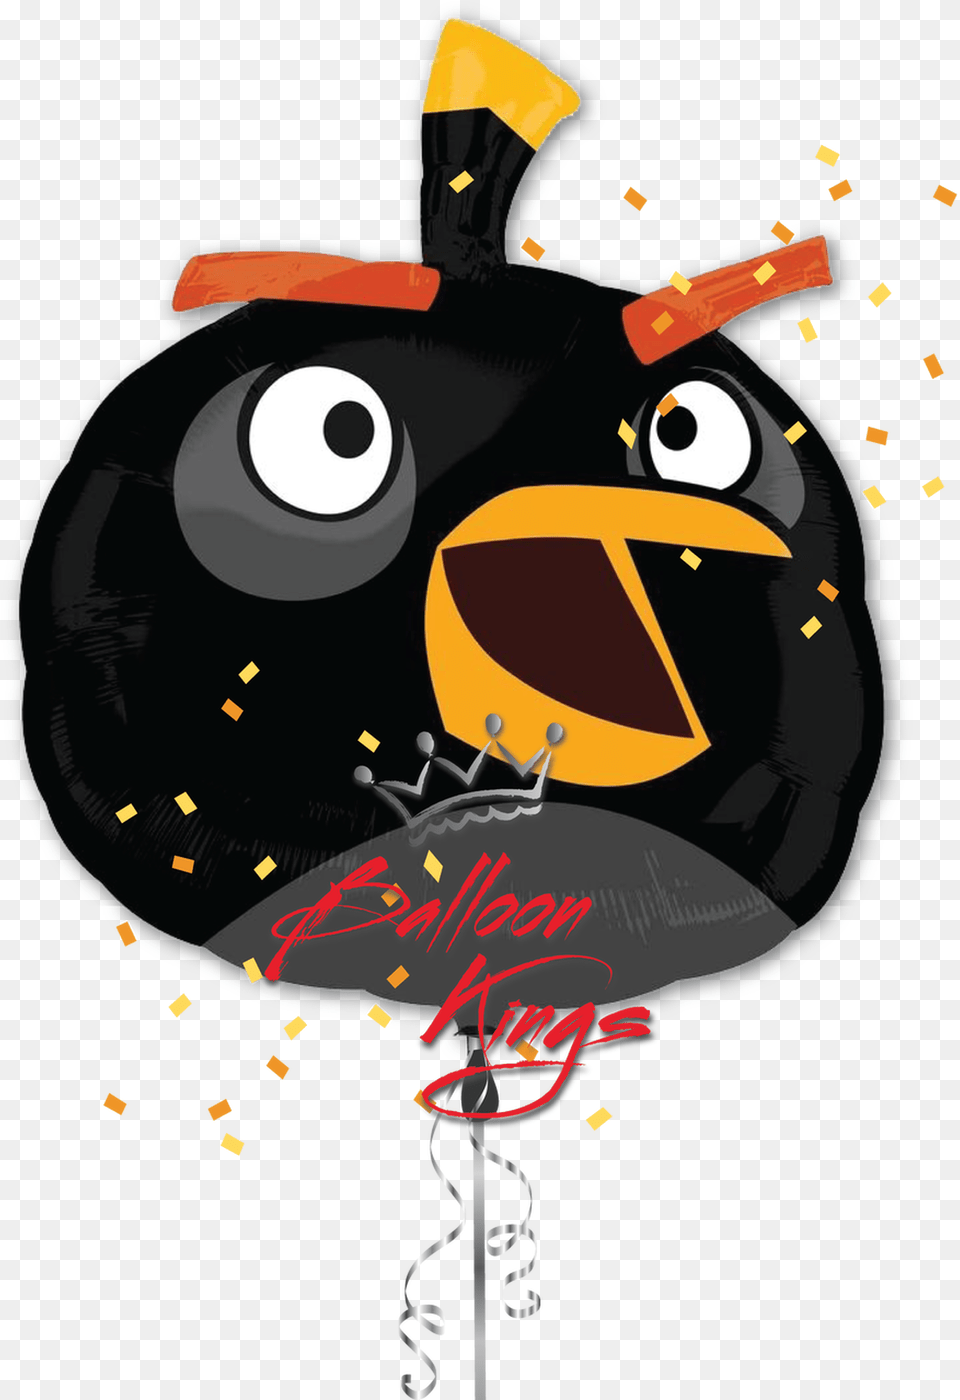 Transparent Angry Bird Angry Birds Black Bird Png Image